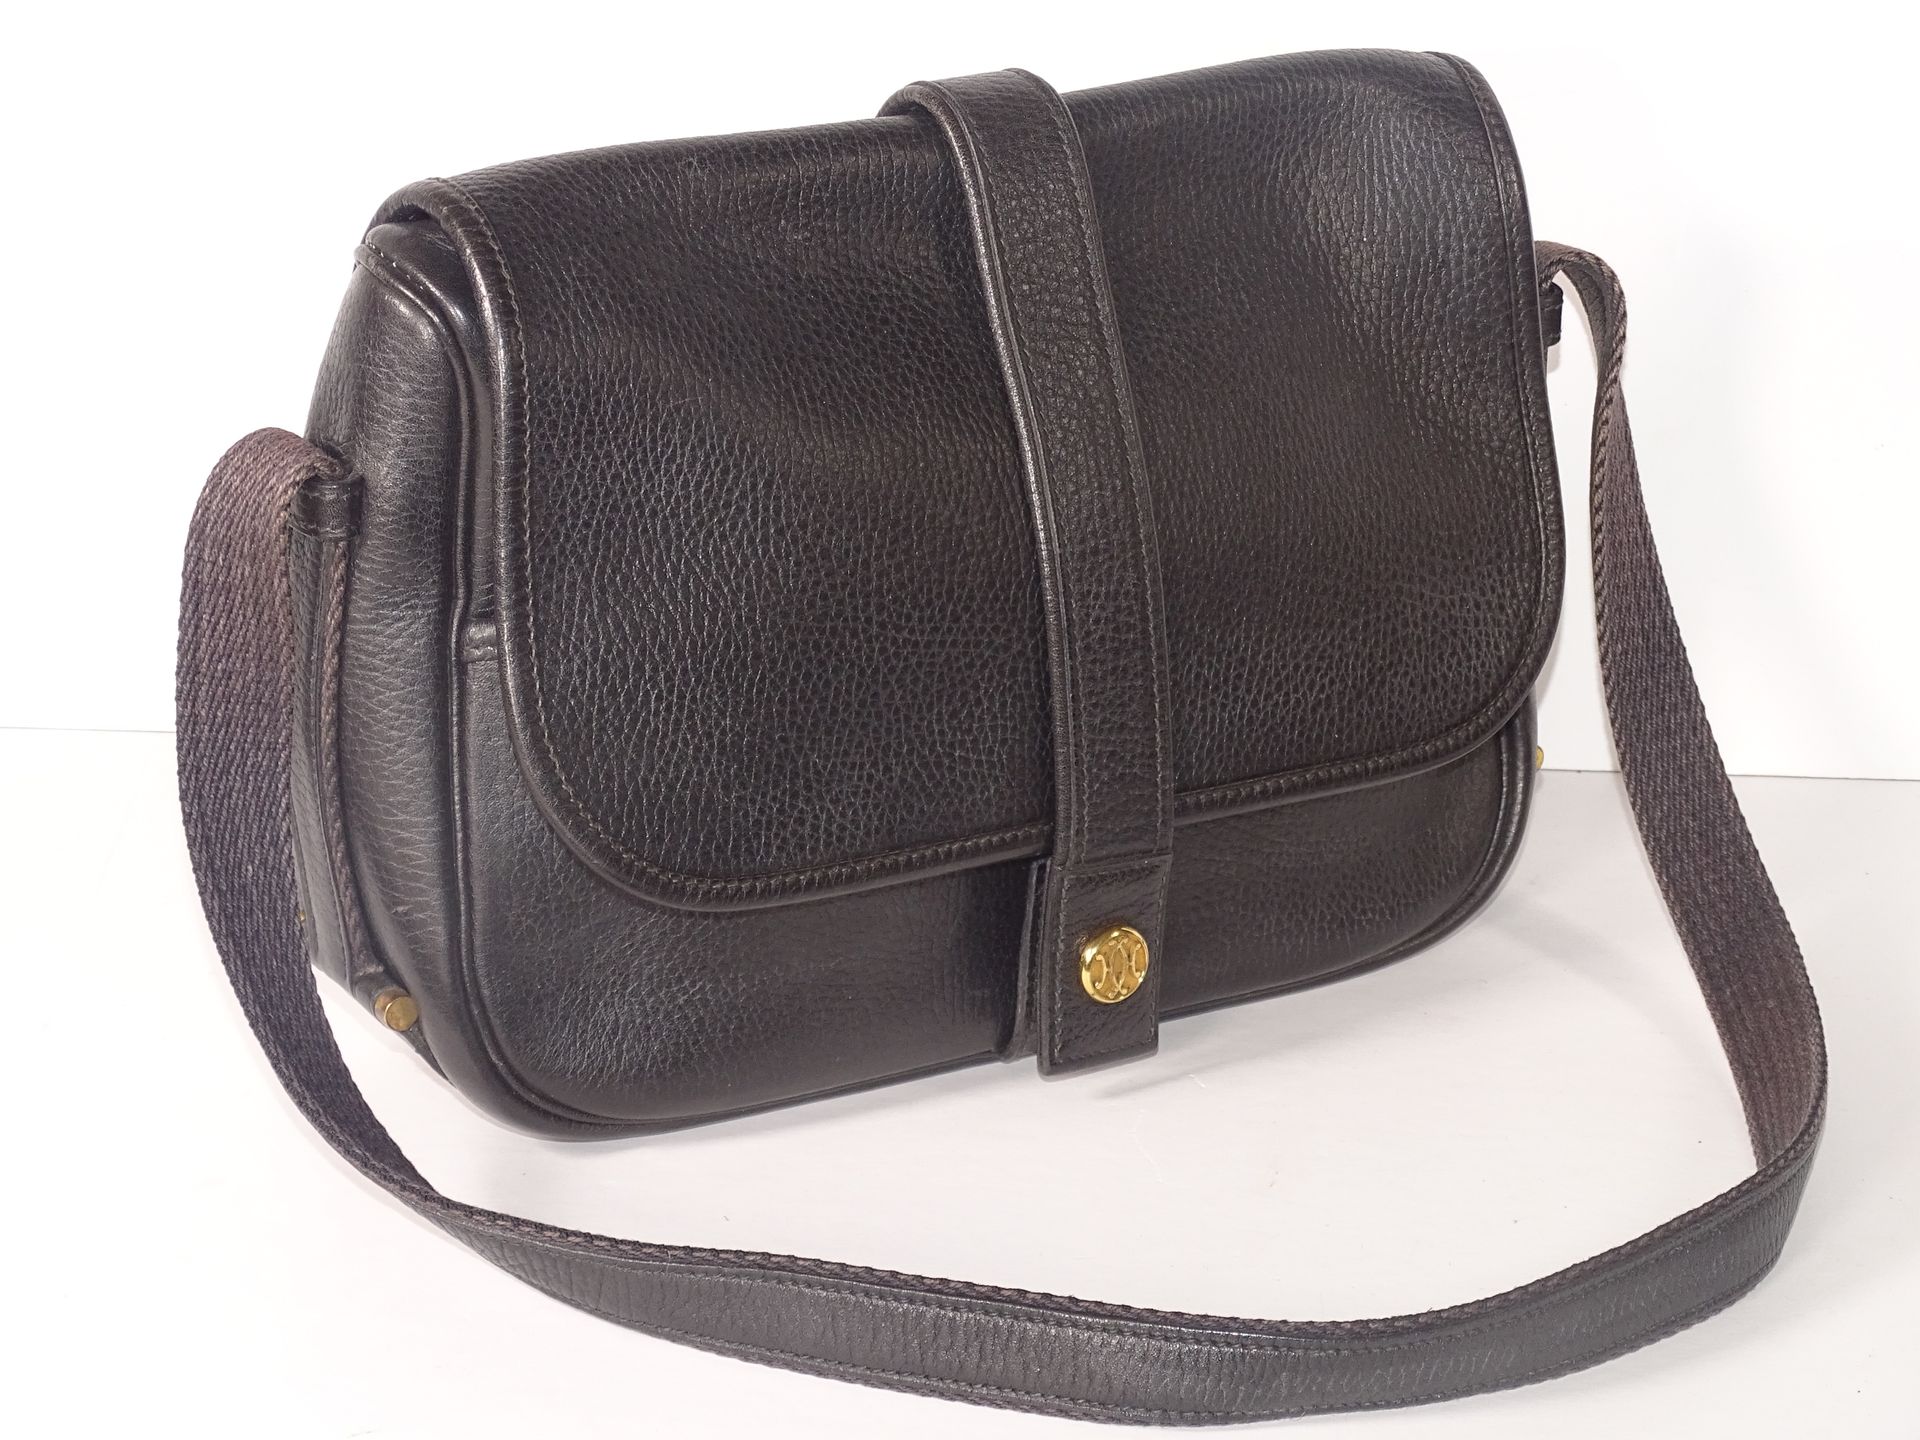 HERMES Schwarze Handtasche aus Leder mit Schulterriemen, Stoff und Leder.

Model&hellip;